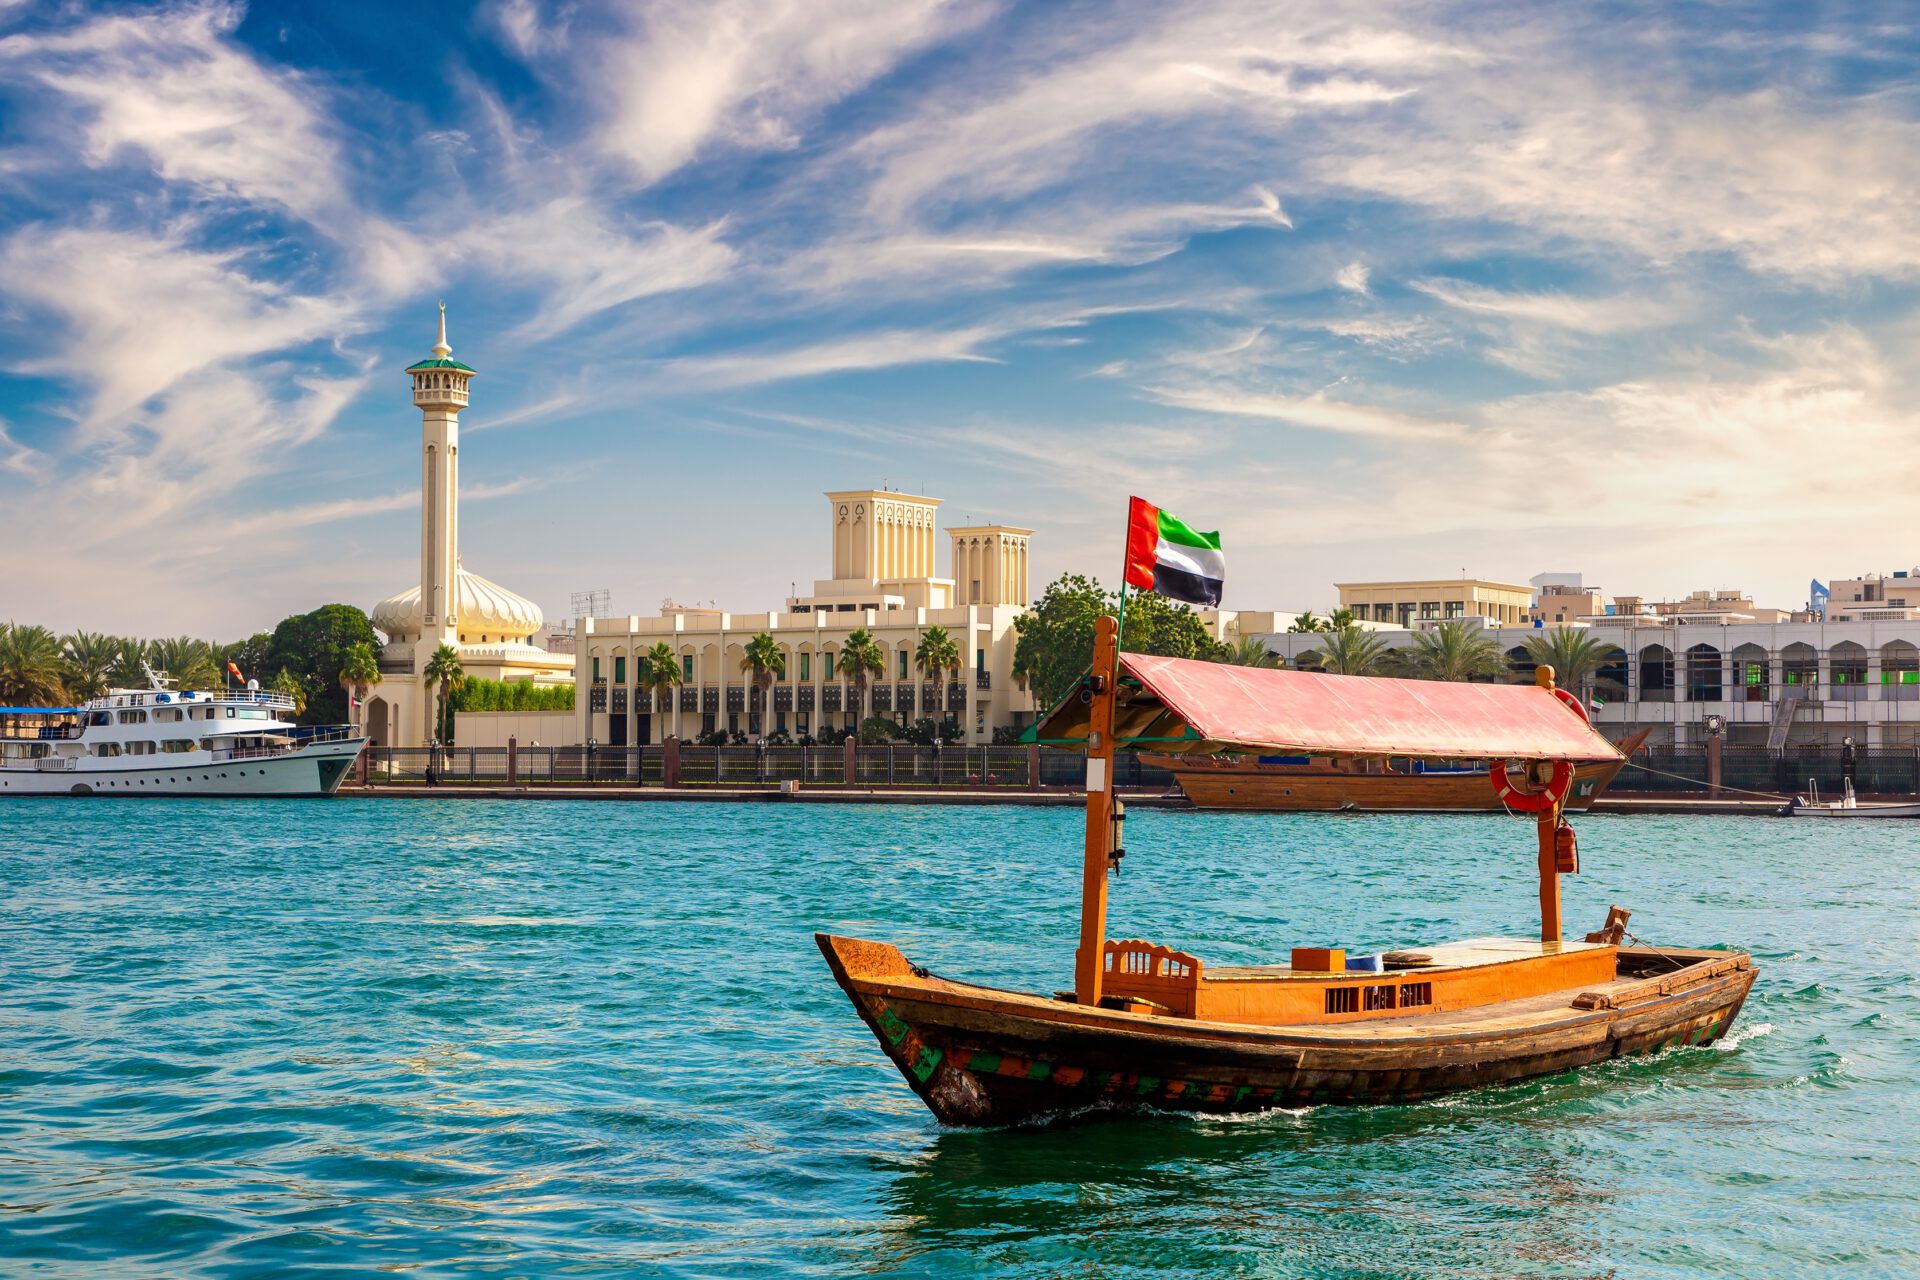 Dubai abra - Traditional boat in the Dubai Creek